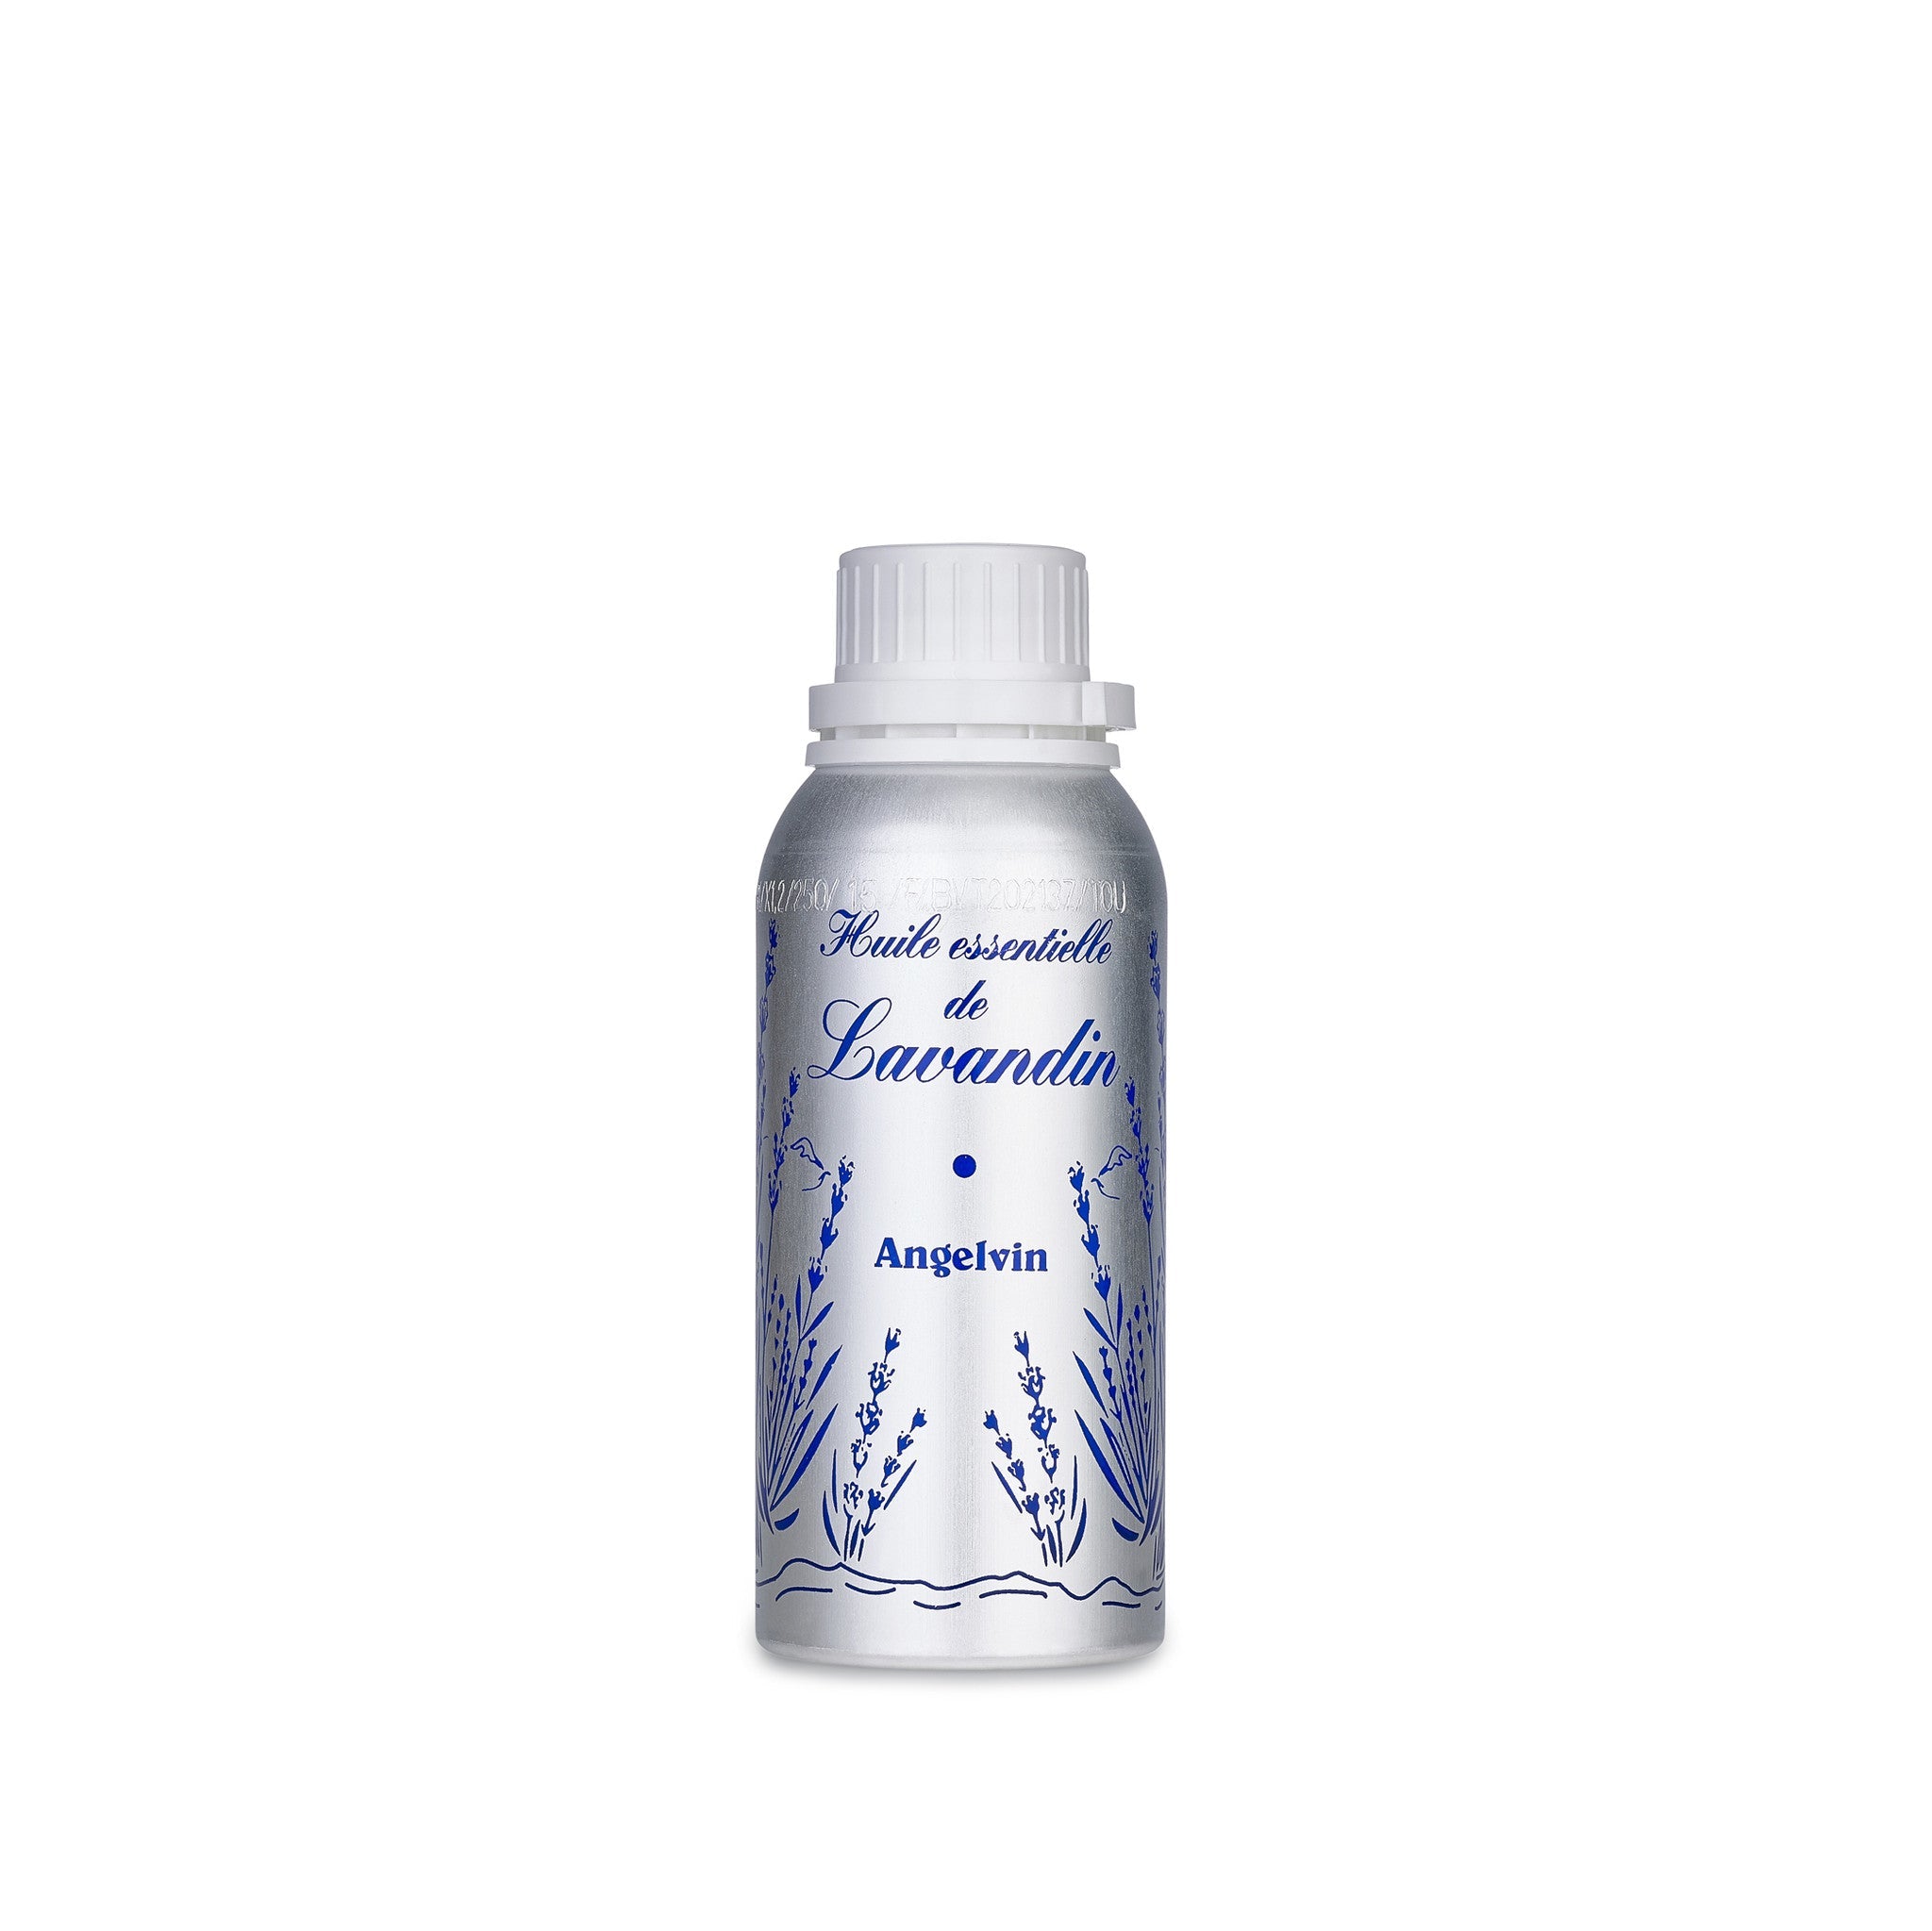 Lavandin Essence Bottle, 300ml